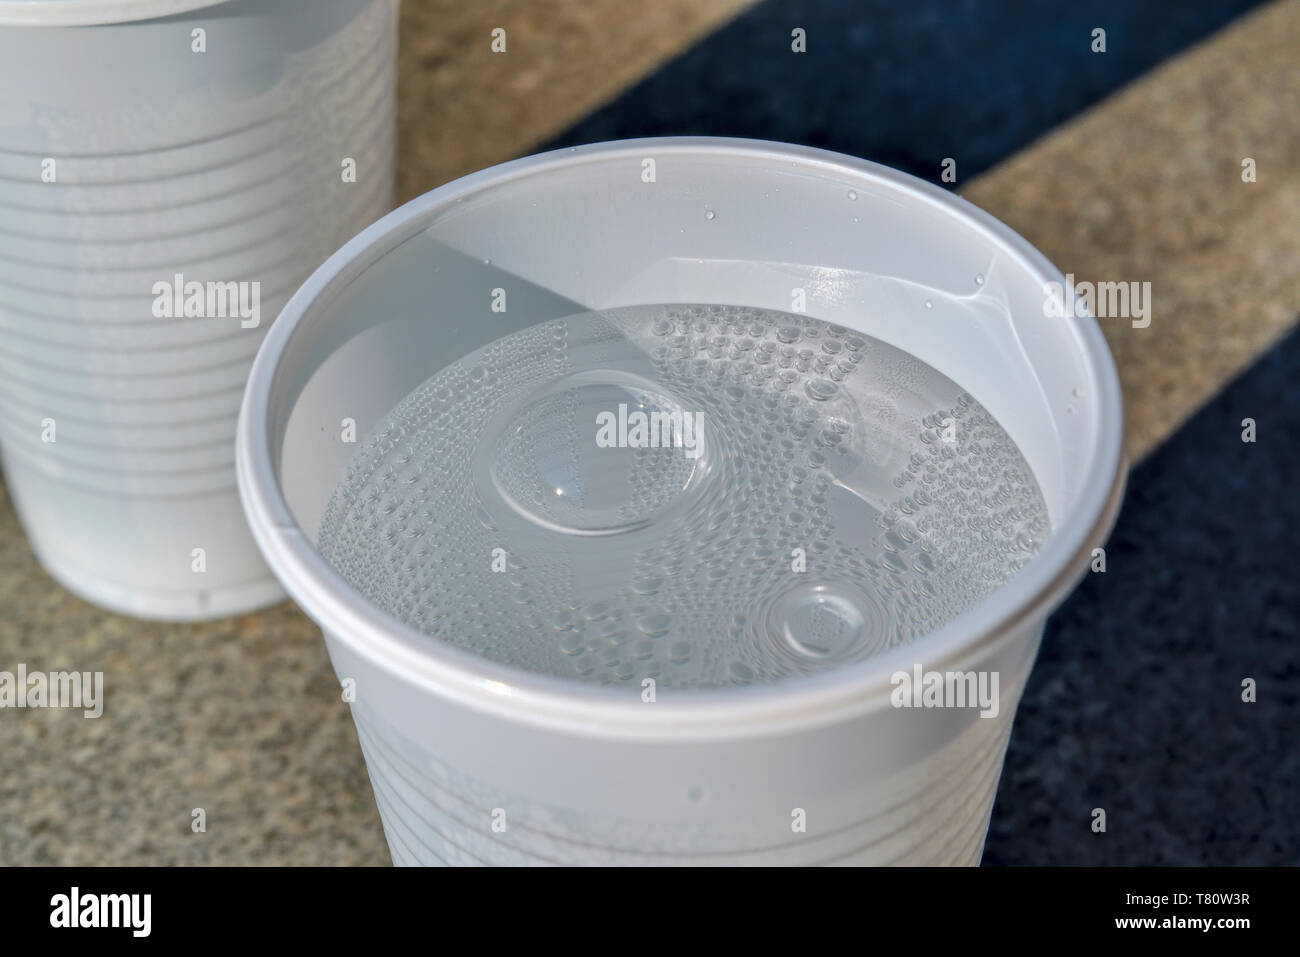 Blanco frío vaso de plástico con agua mineral con gas contra una encimera de piedra. Foto de stock